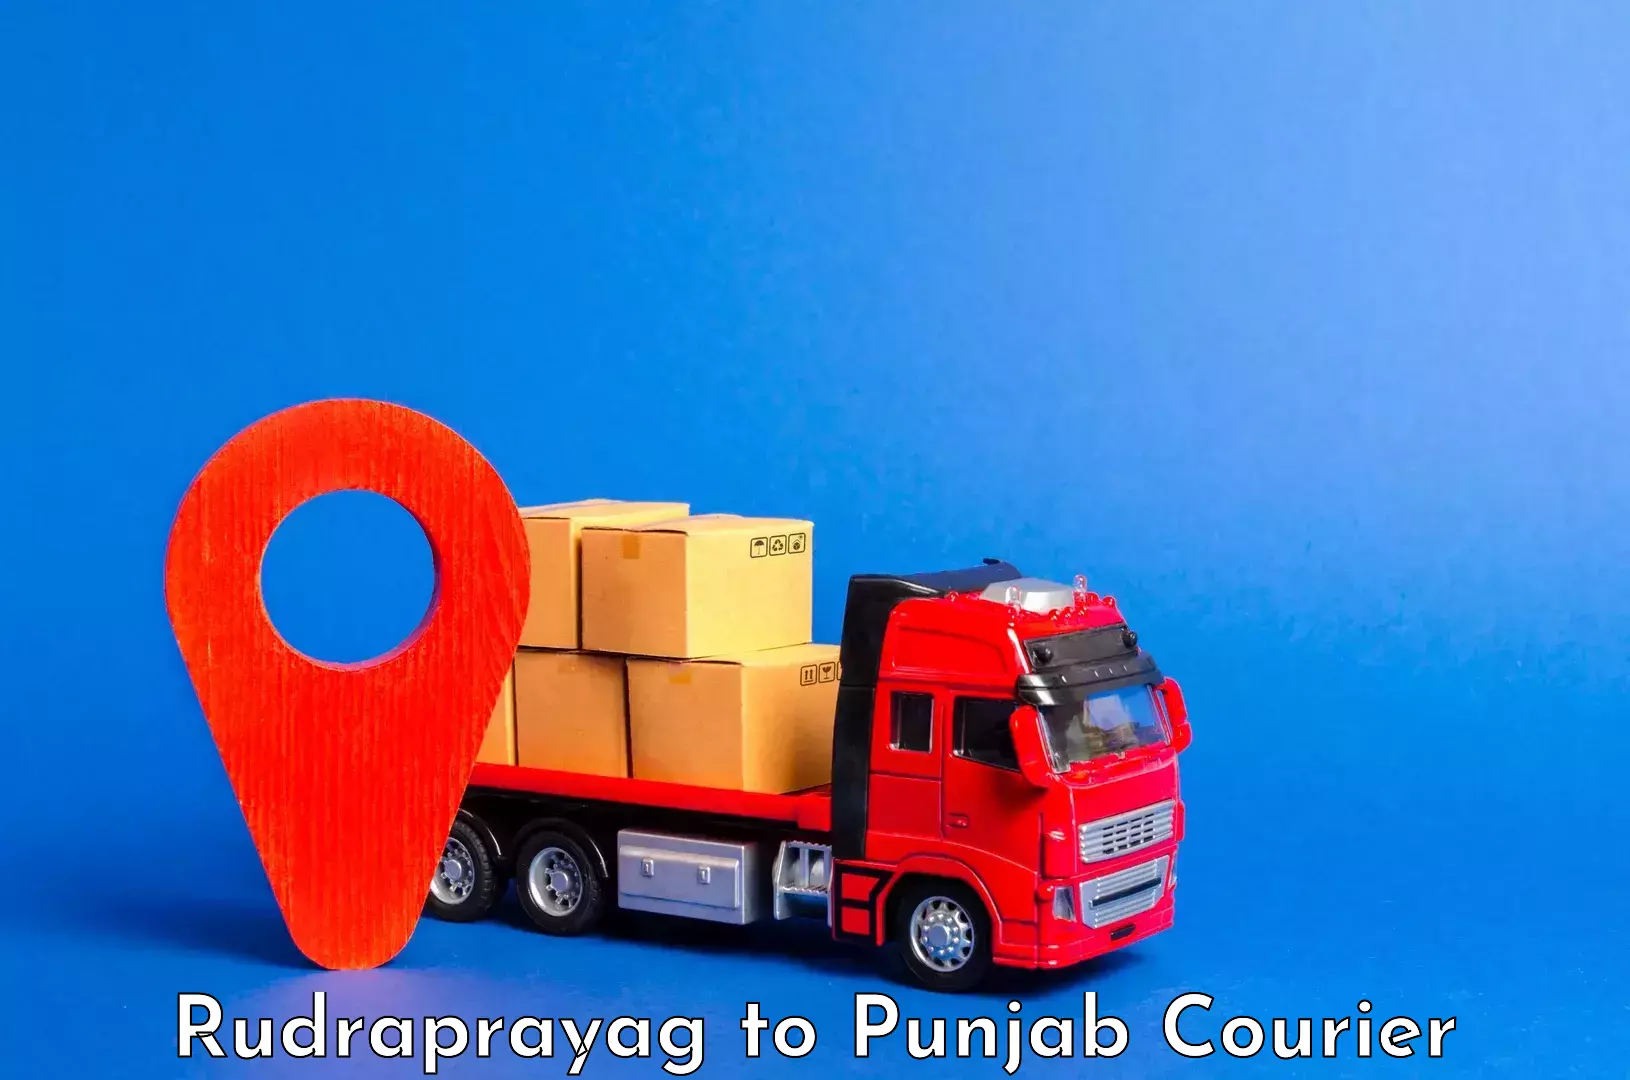 Luggage delivery news Rudraprayag to Punjab